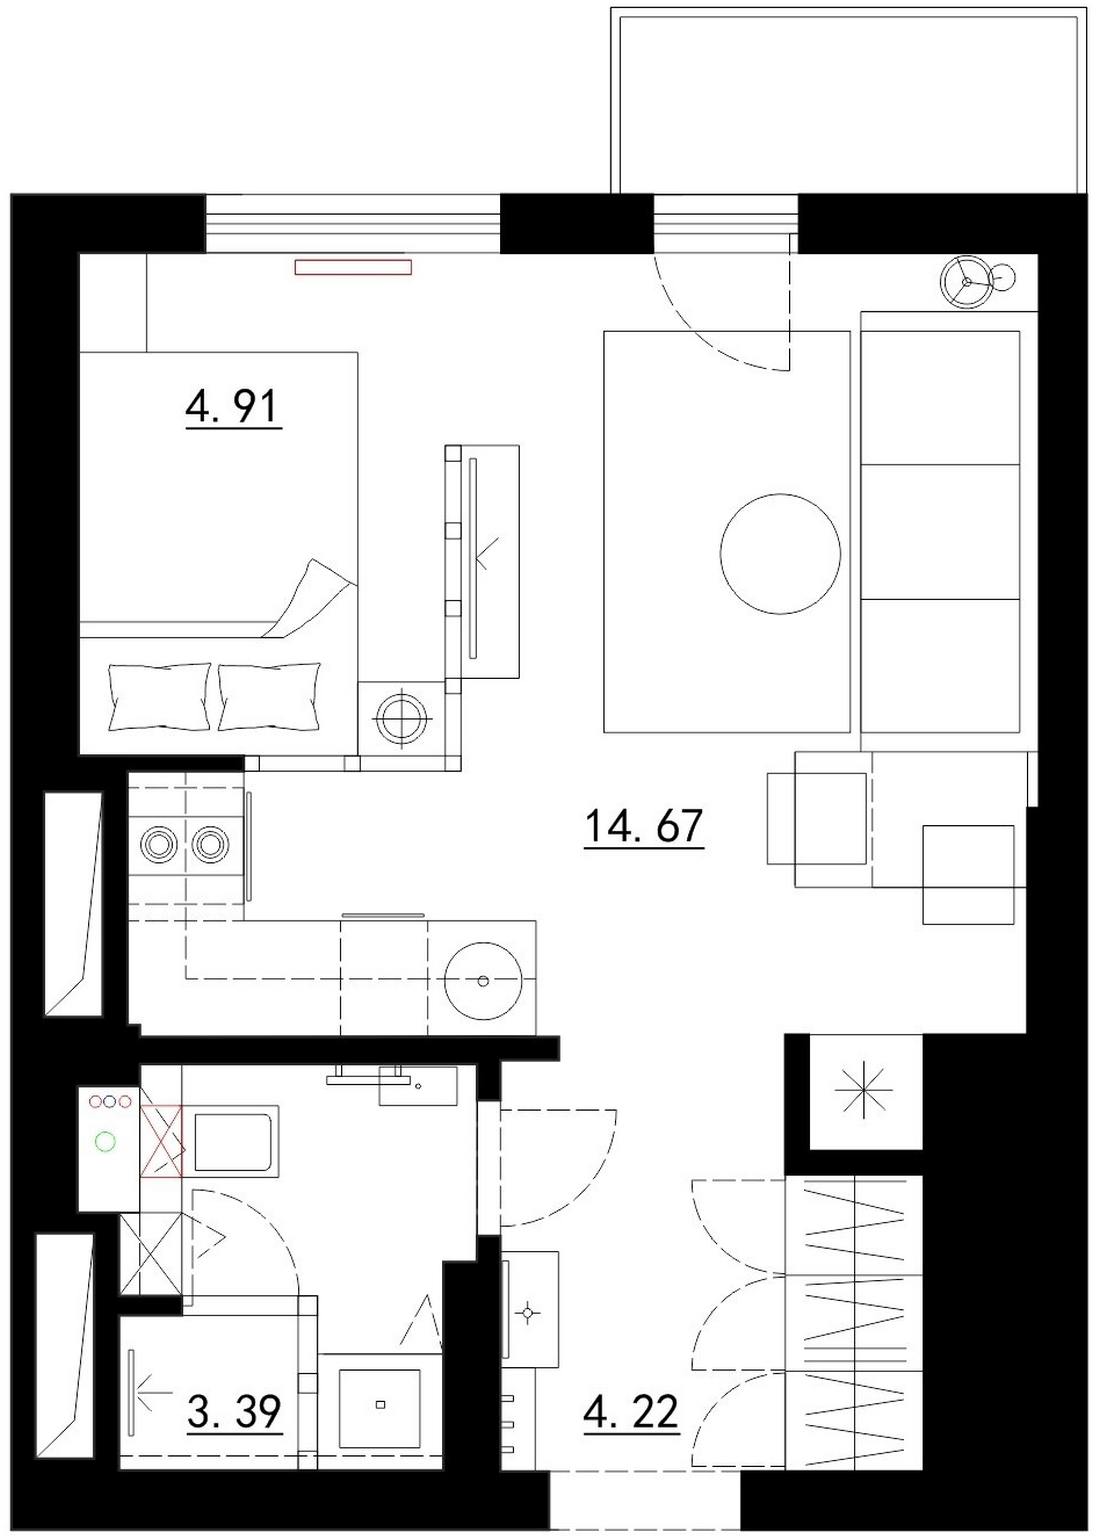 Kis lakás egyszerű, stílusos, költségkímélő berendezéssel, a 28m2-es területen ügyesen leválasztott hálószobával